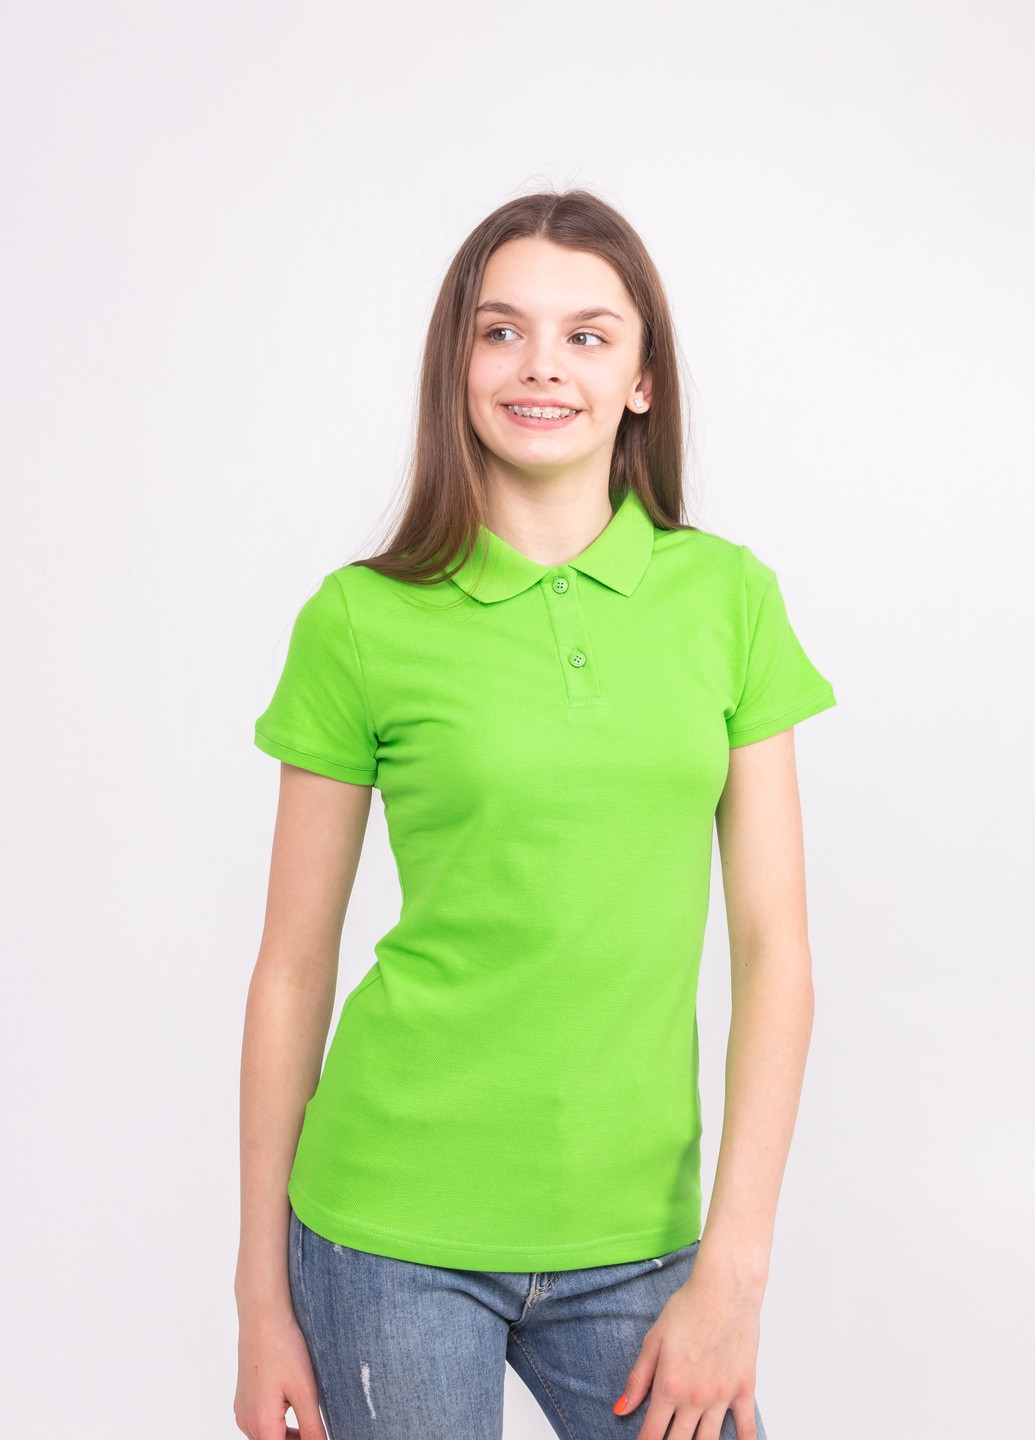 Салатовая женская футболка-футболка поло жіноча TvoePolo однотонная